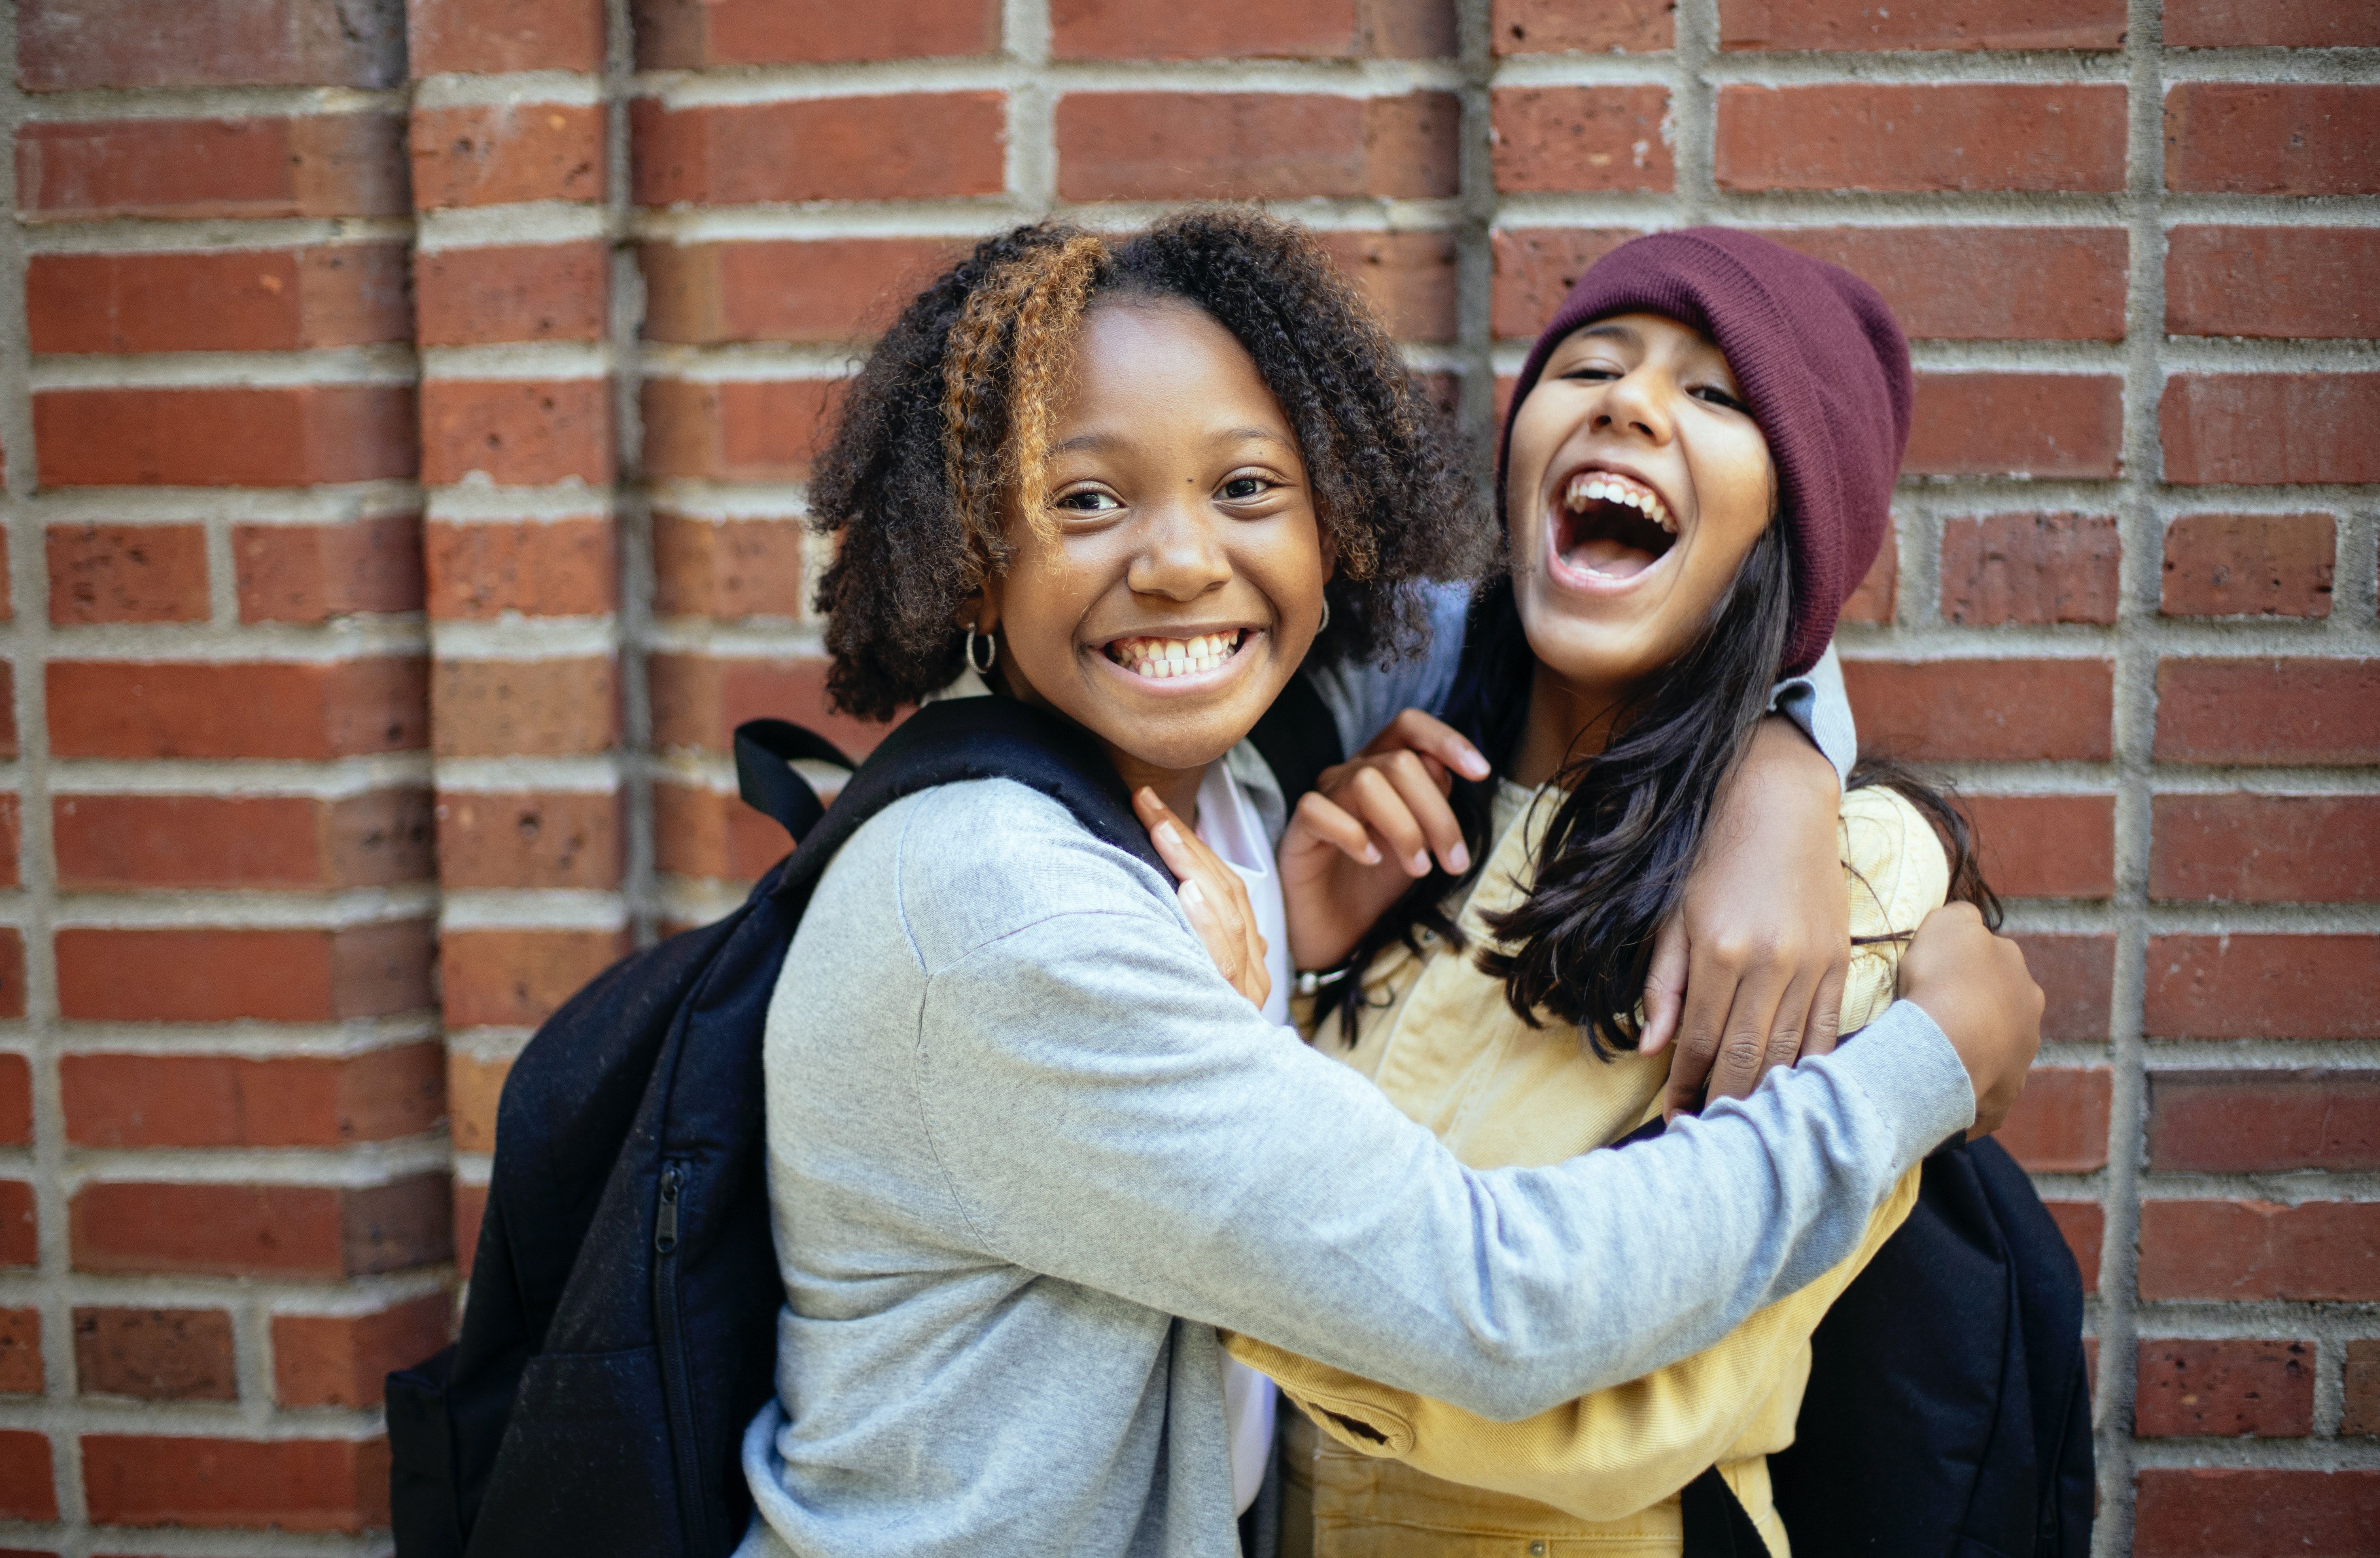 NYE VENNER: Ungdomsjournalist Rakel har noen tips til hvordan du kan få deg nye venner. (Foto: Mary Taylor/ Pexels).